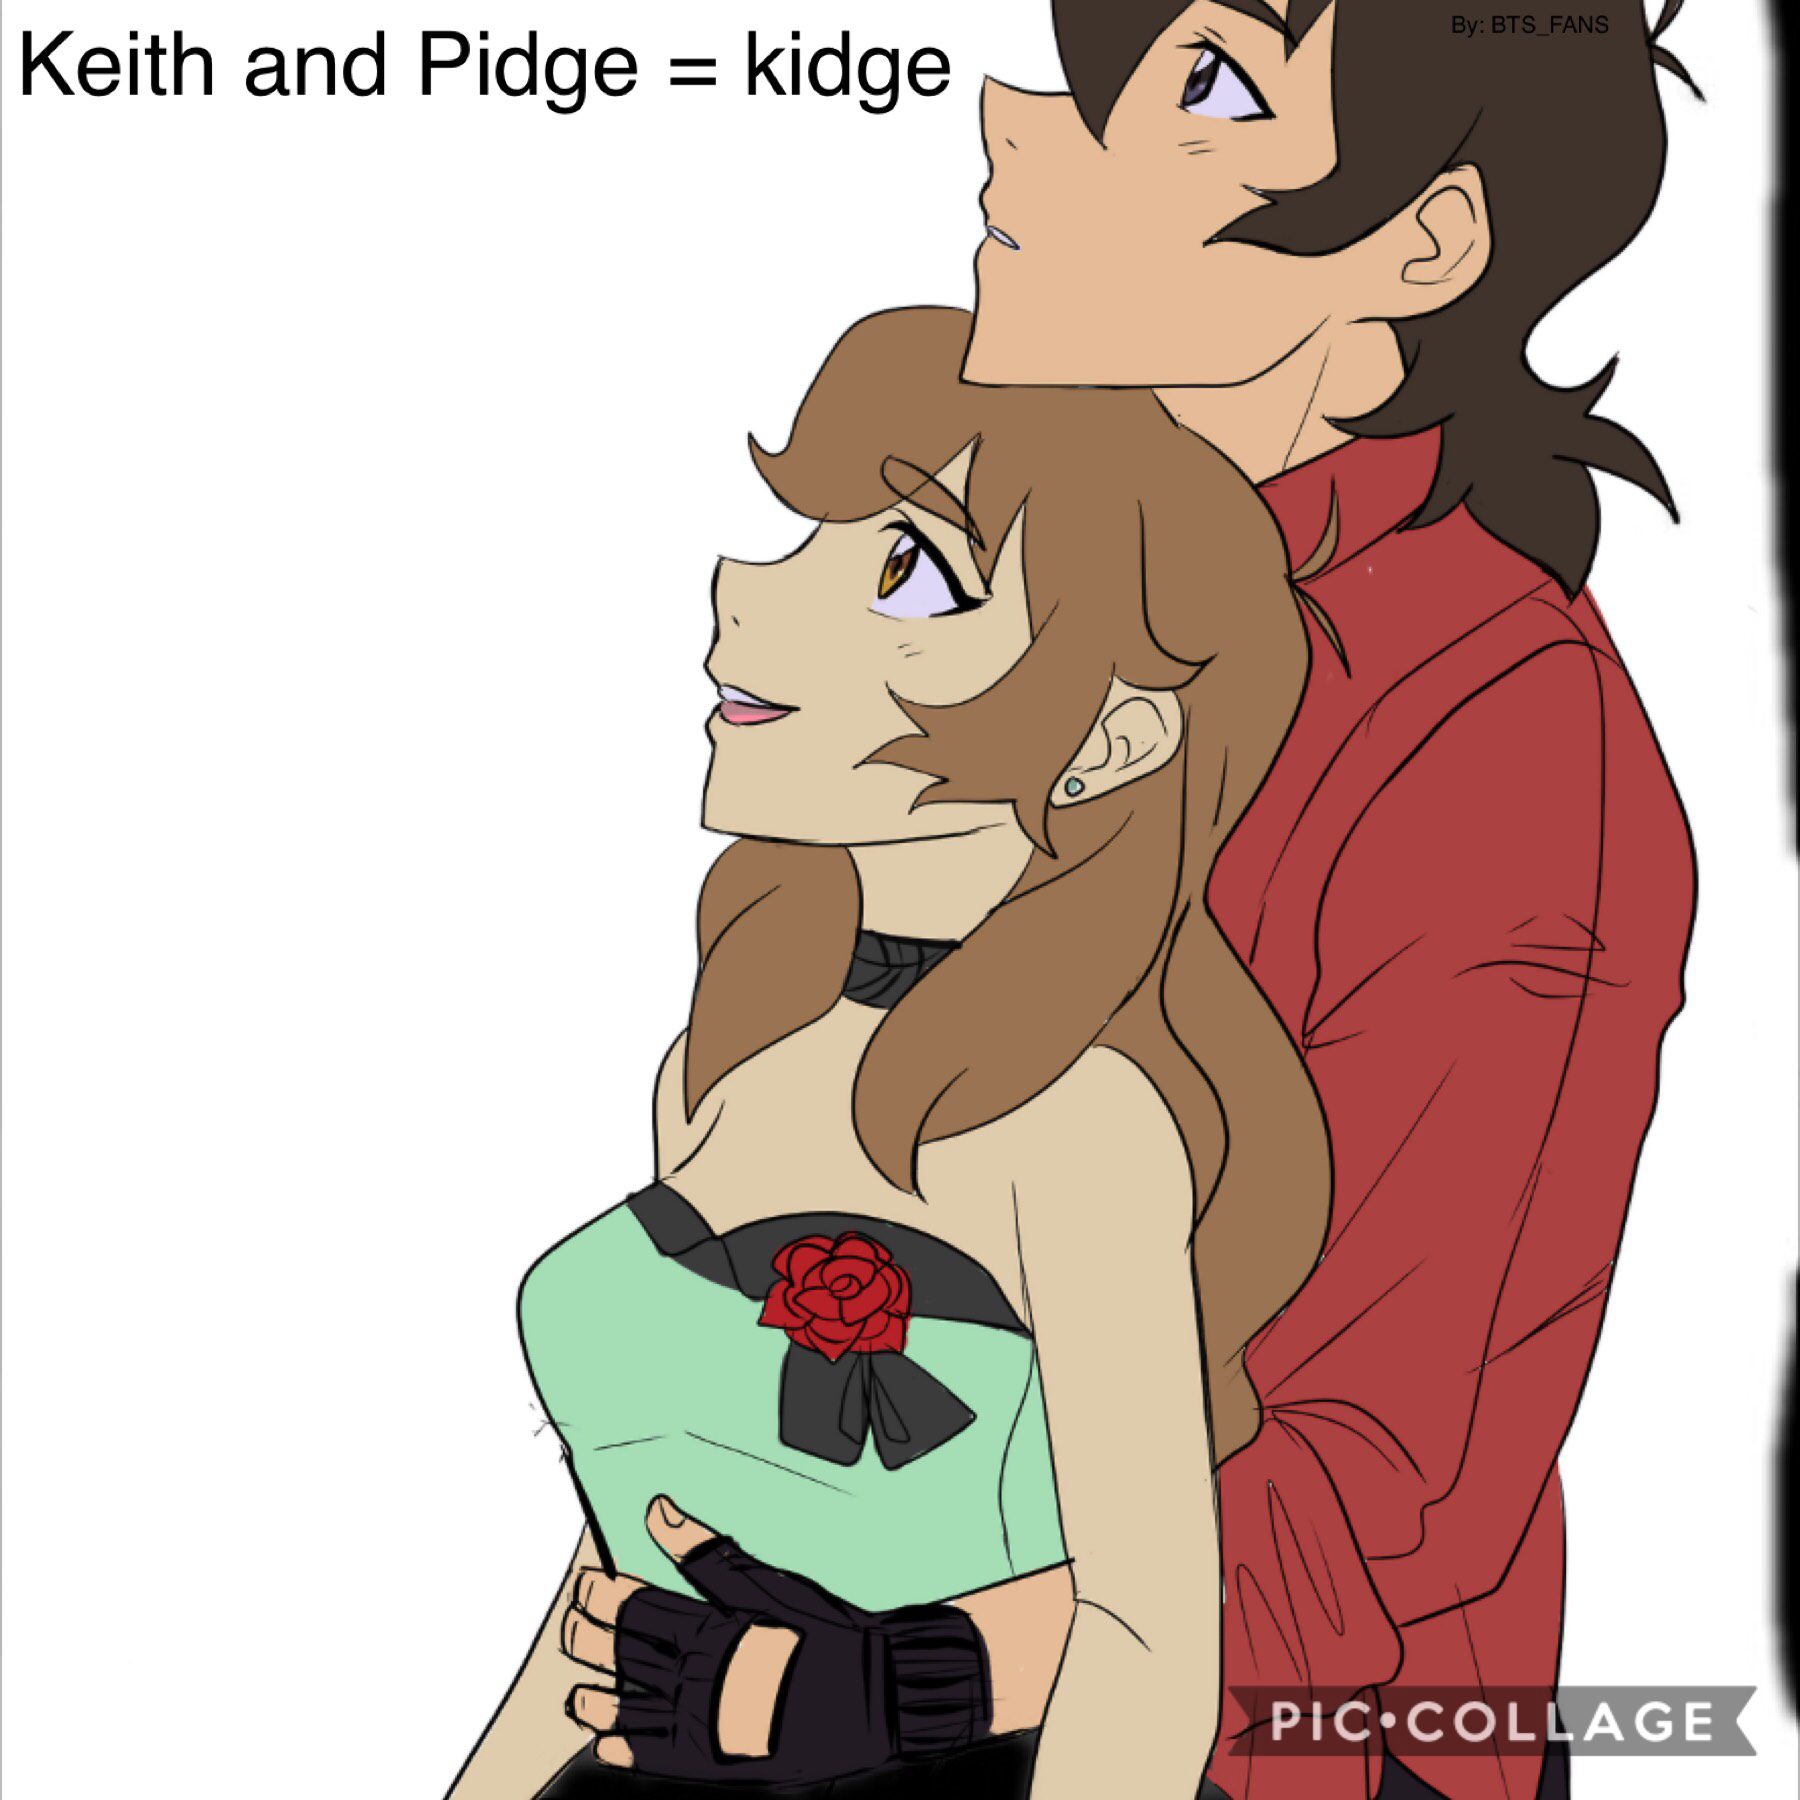 Kieth and Pidge = Kidge